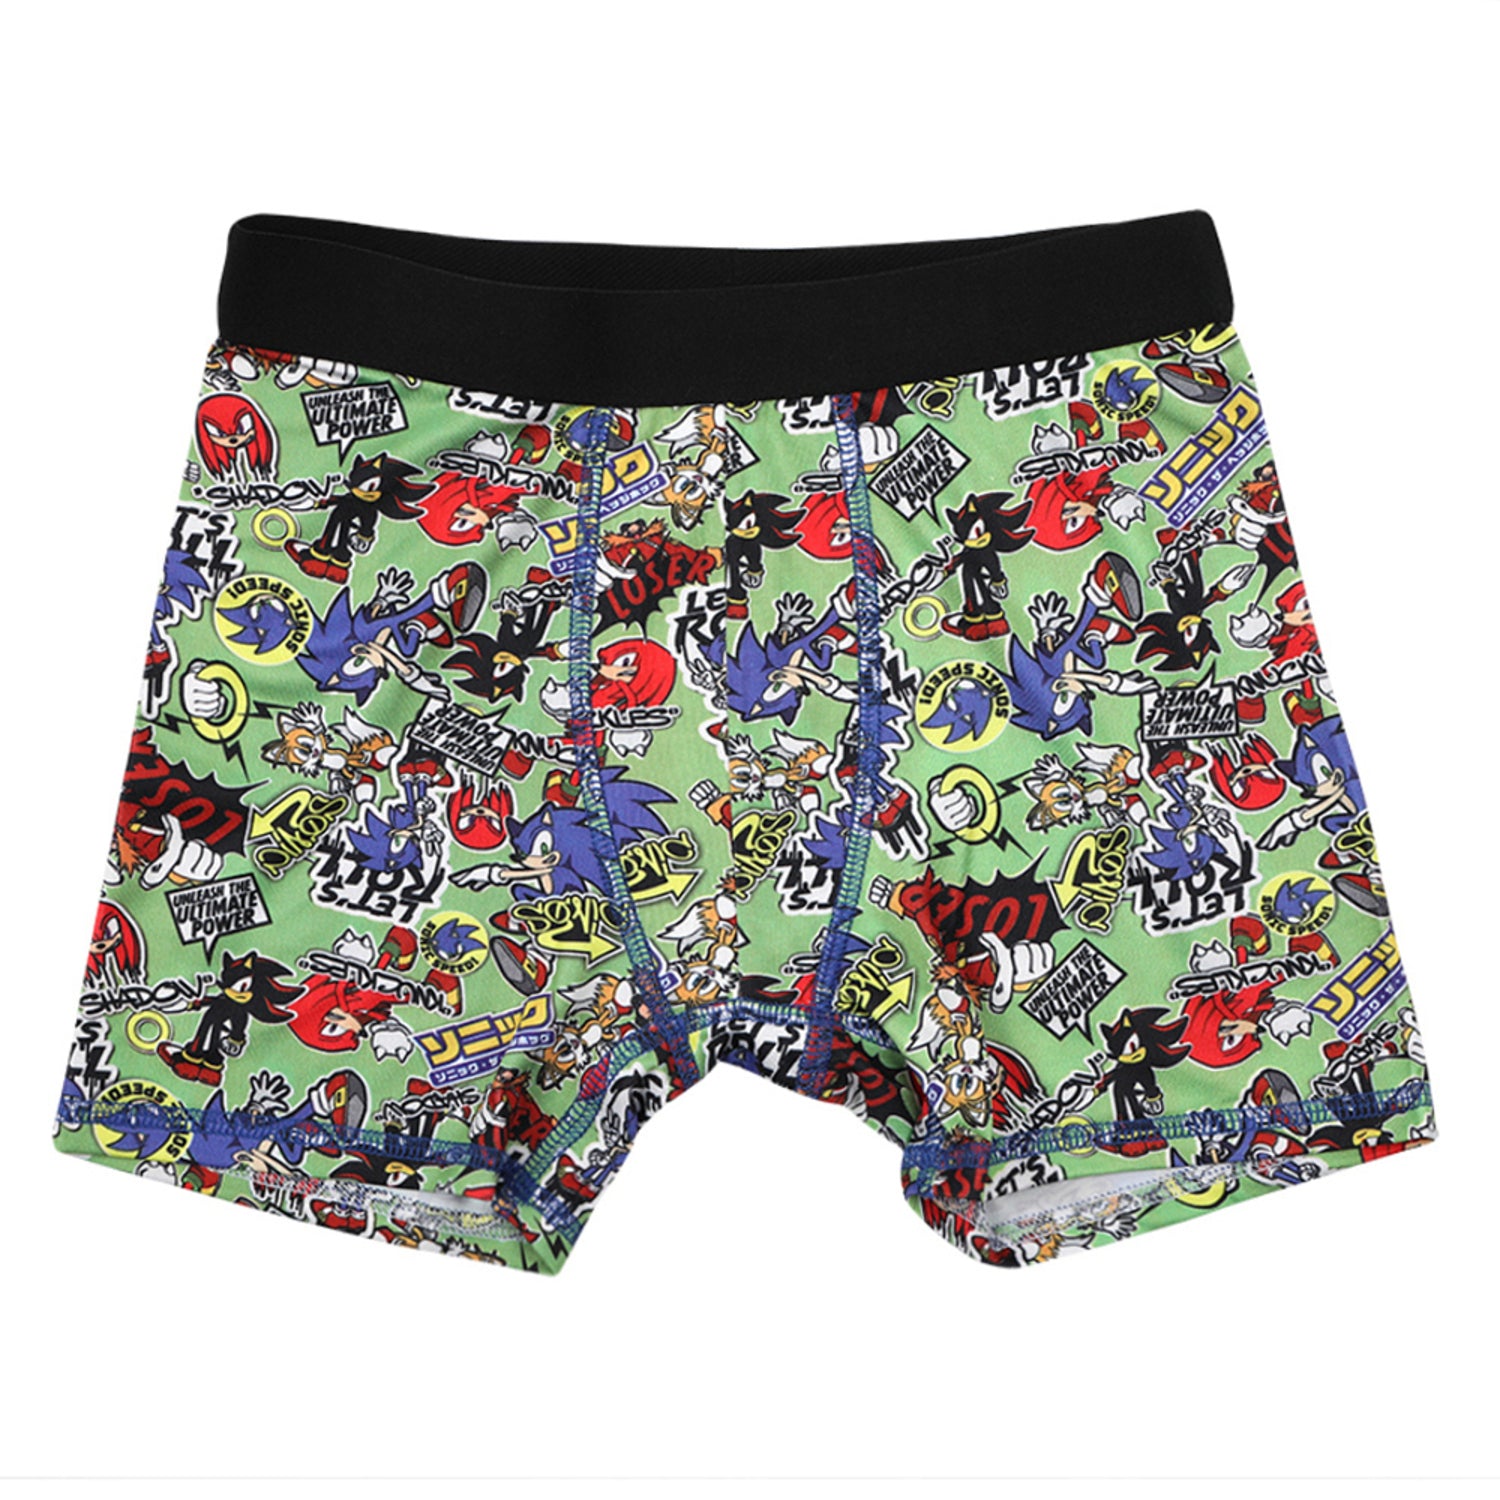 Sonic Hedgehog Boys Underwear, 3 Pack Boxer Brief (Little Boys & Big Boys)  